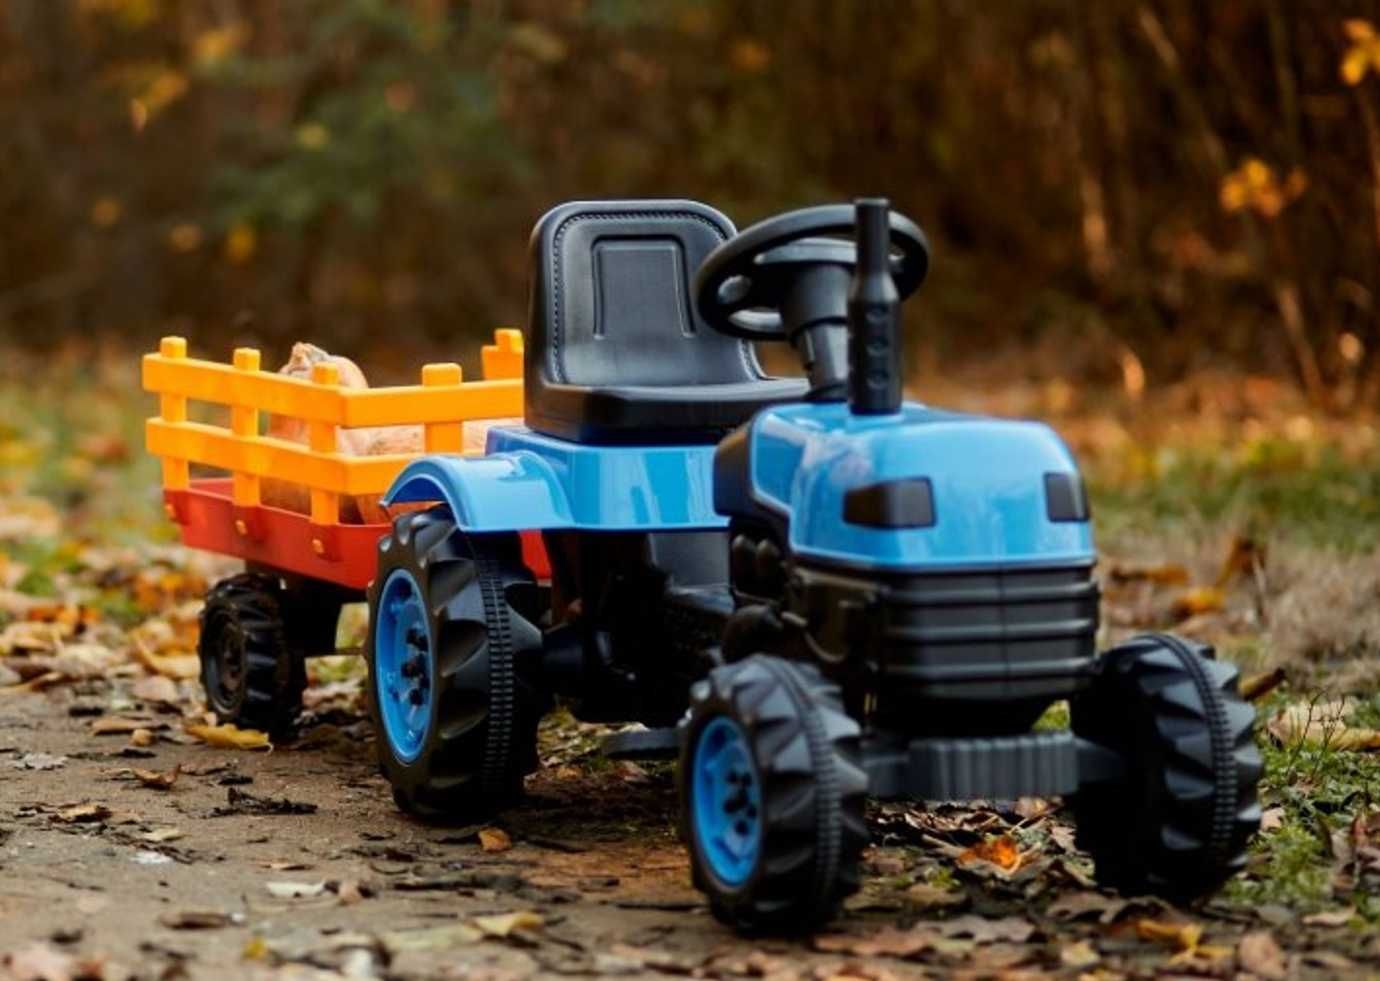 Іграшка вело трактор на педалях з причепом на 2 - 4 рочки дитині